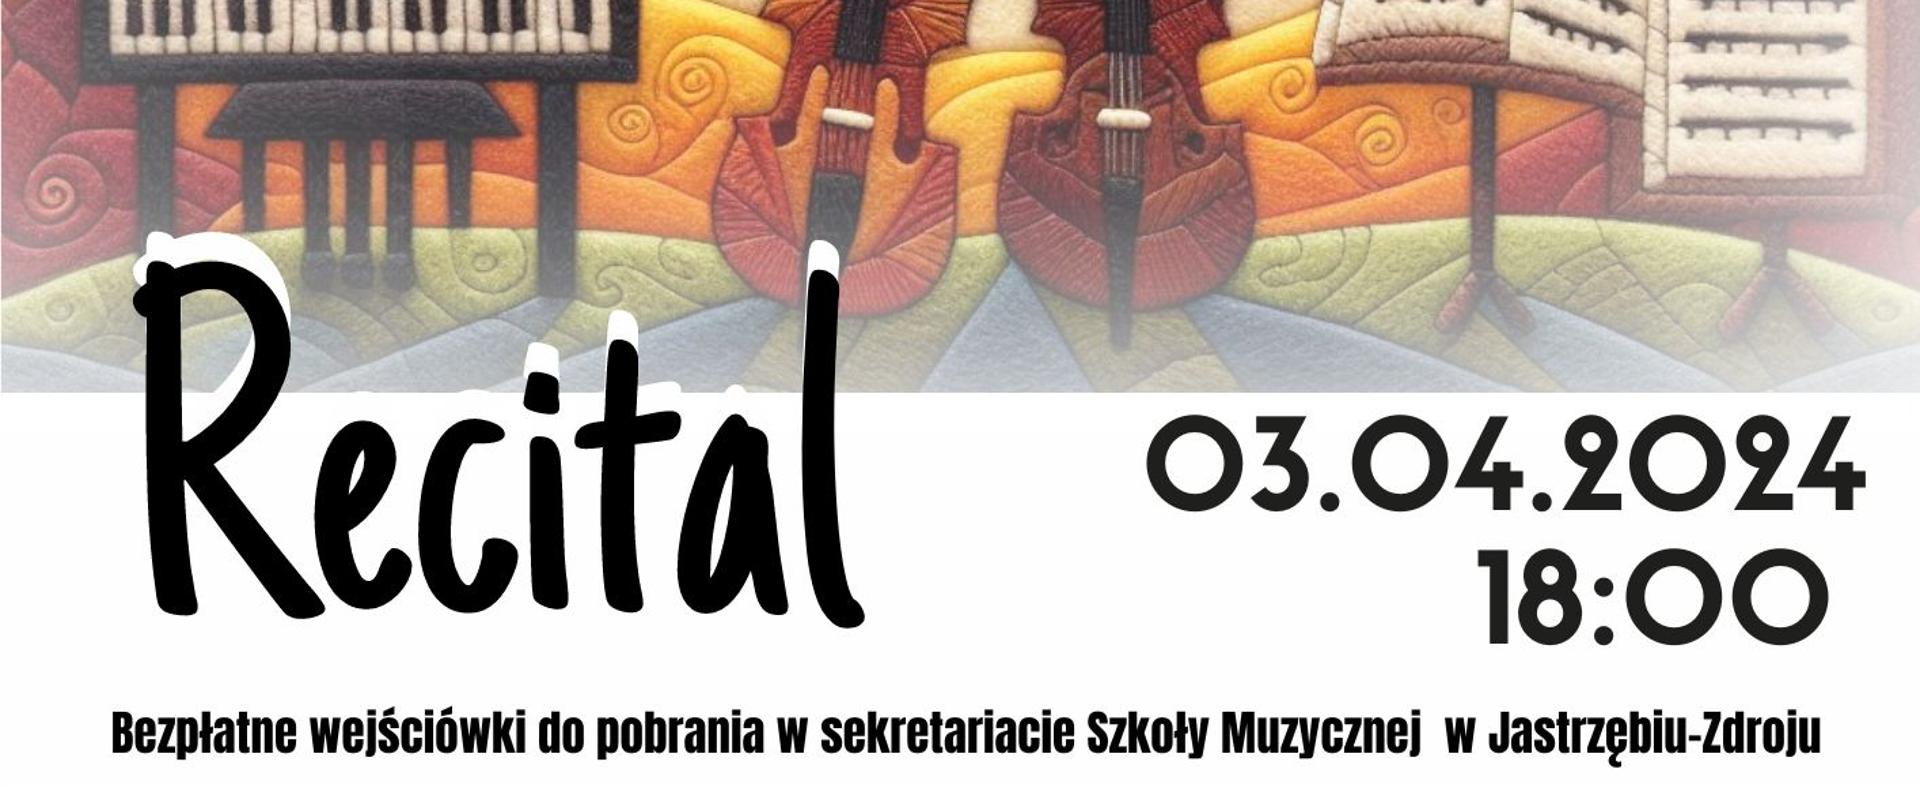 Plakat informacyjny dotyczący Recitalu wiolonczelowego odbywającego się w dniu 03.04.2024 r. o godz. 18.00.